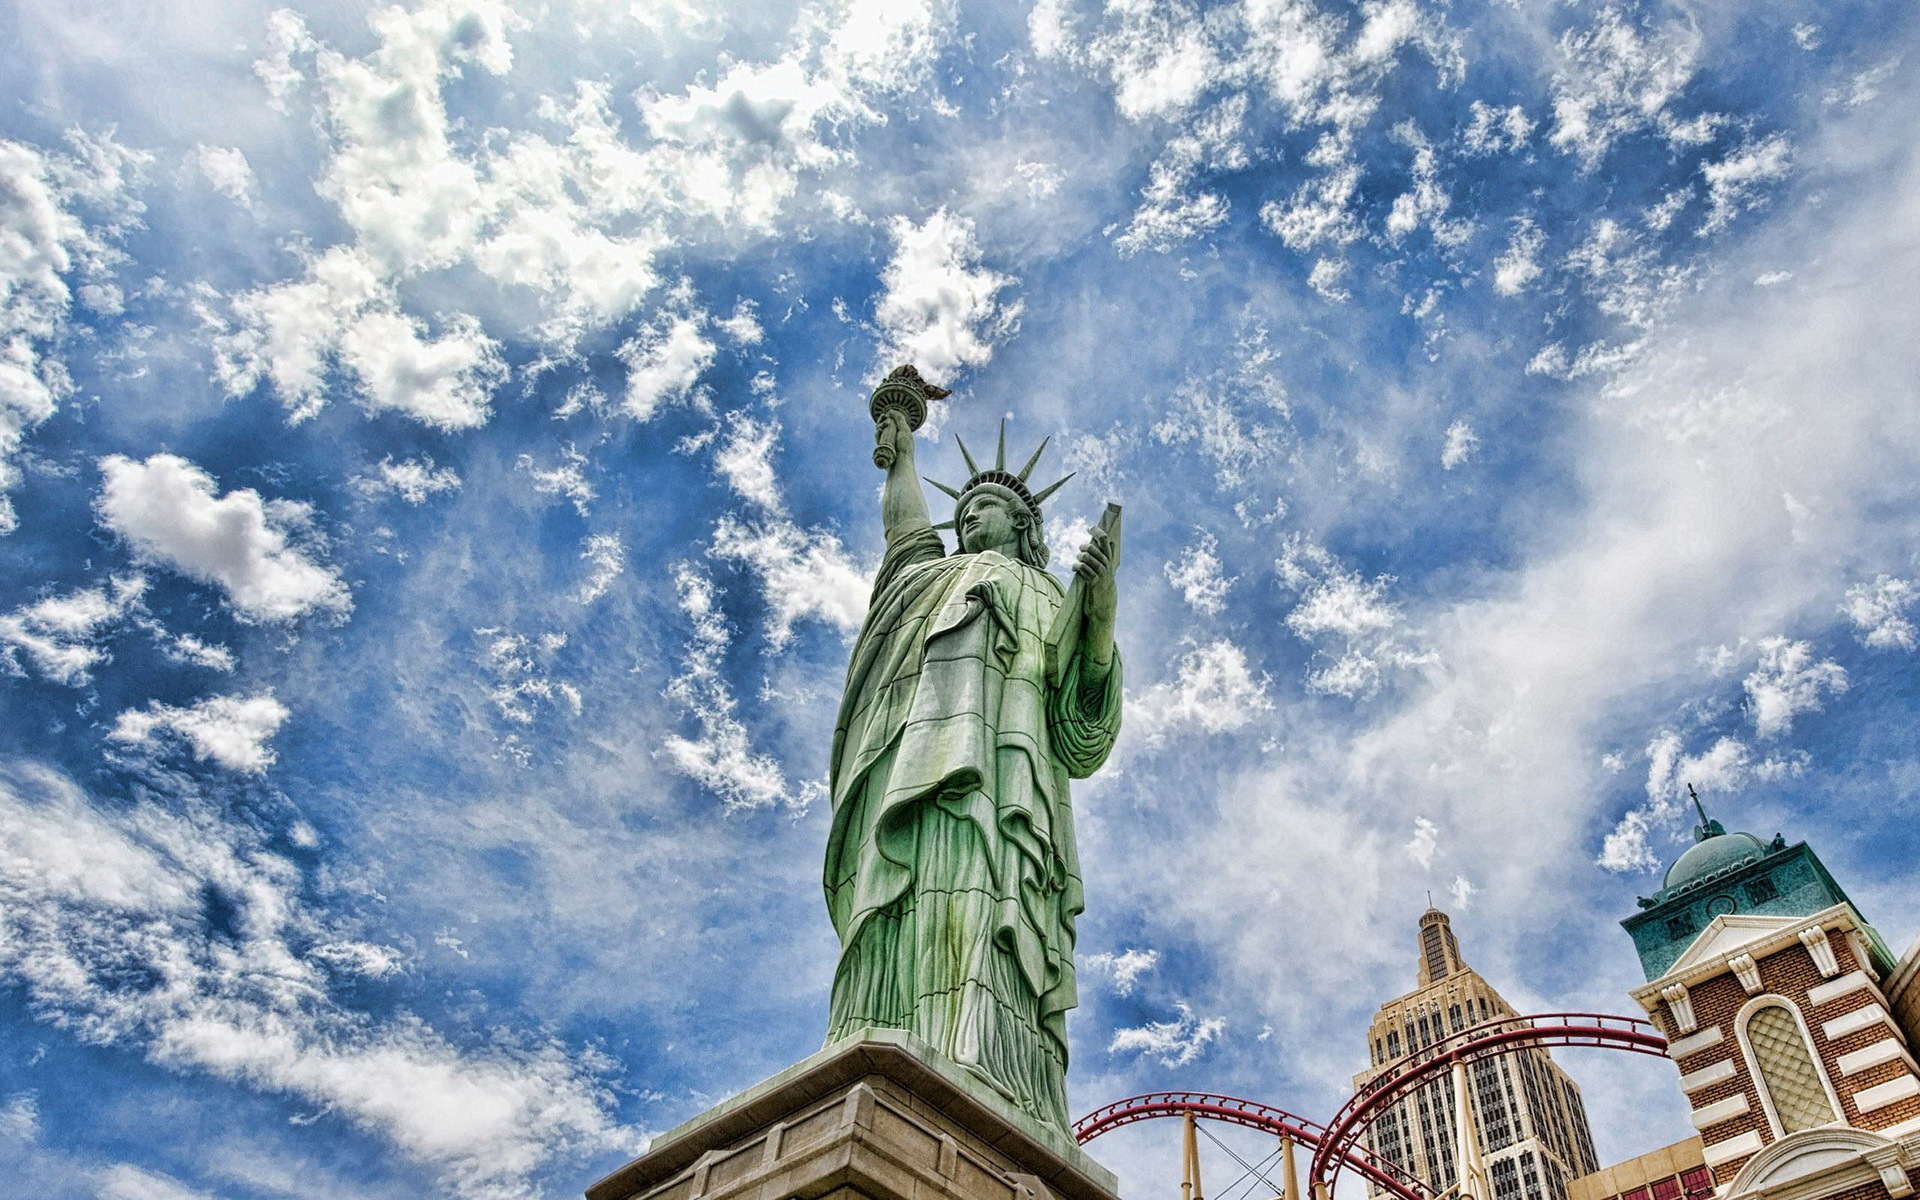 Скачать обои "Статуя Свободы" на телефон в высоком качестве, вертикальные  картинки "Статуя Свободы" бесплатно